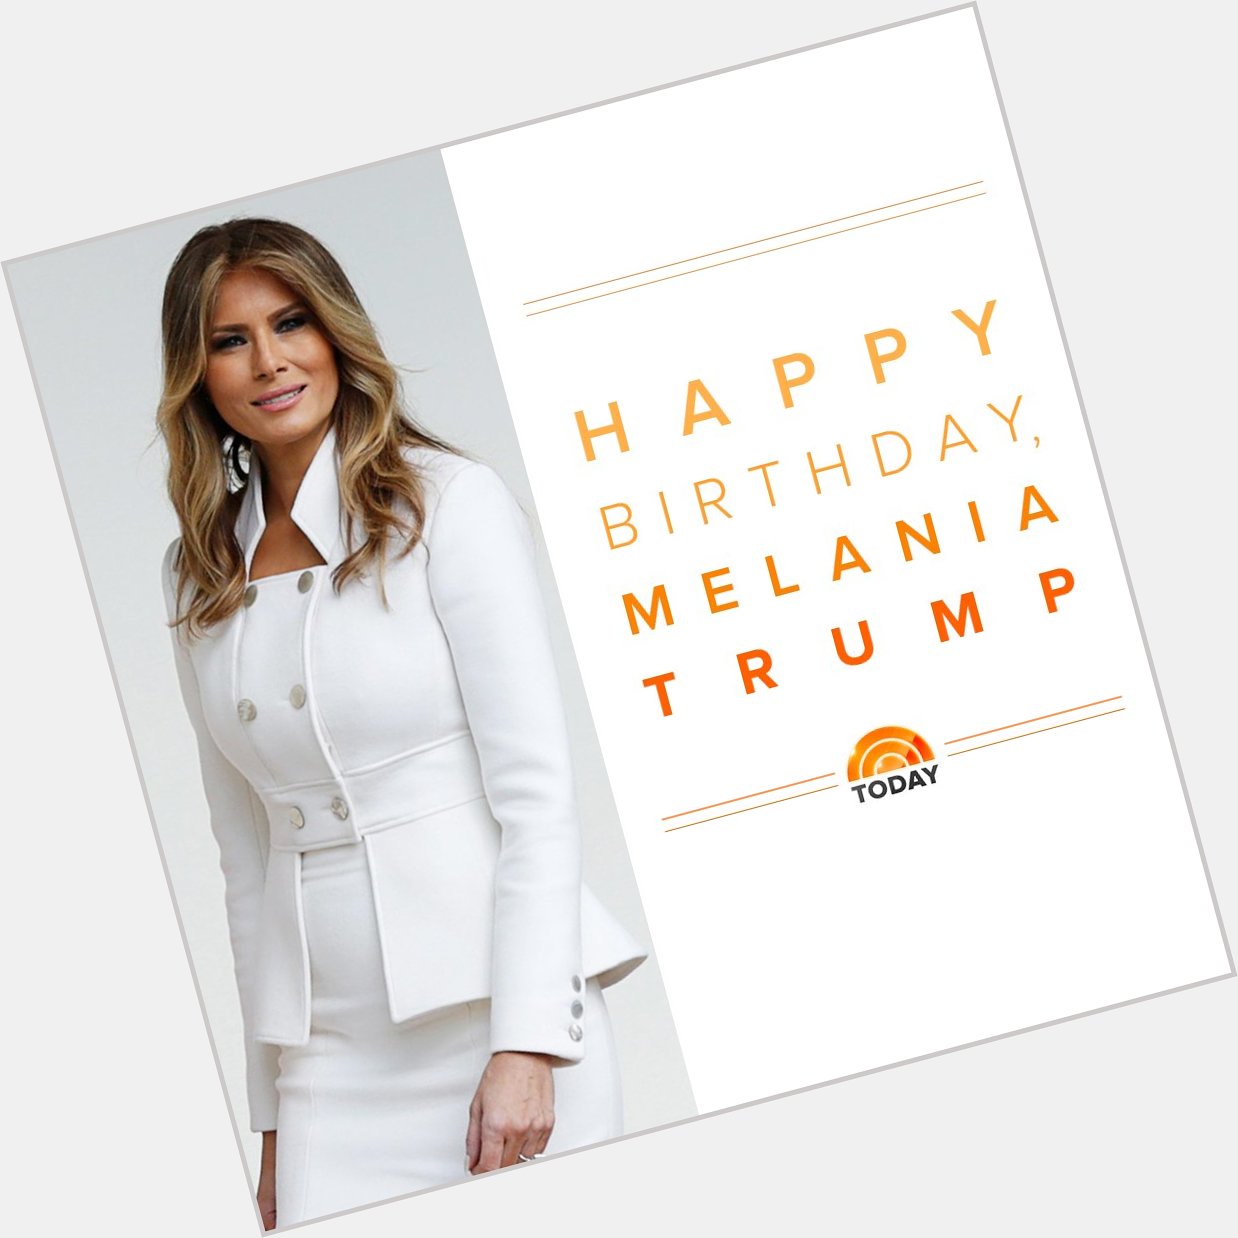 Happy birthday, first lady Melania Trump!  